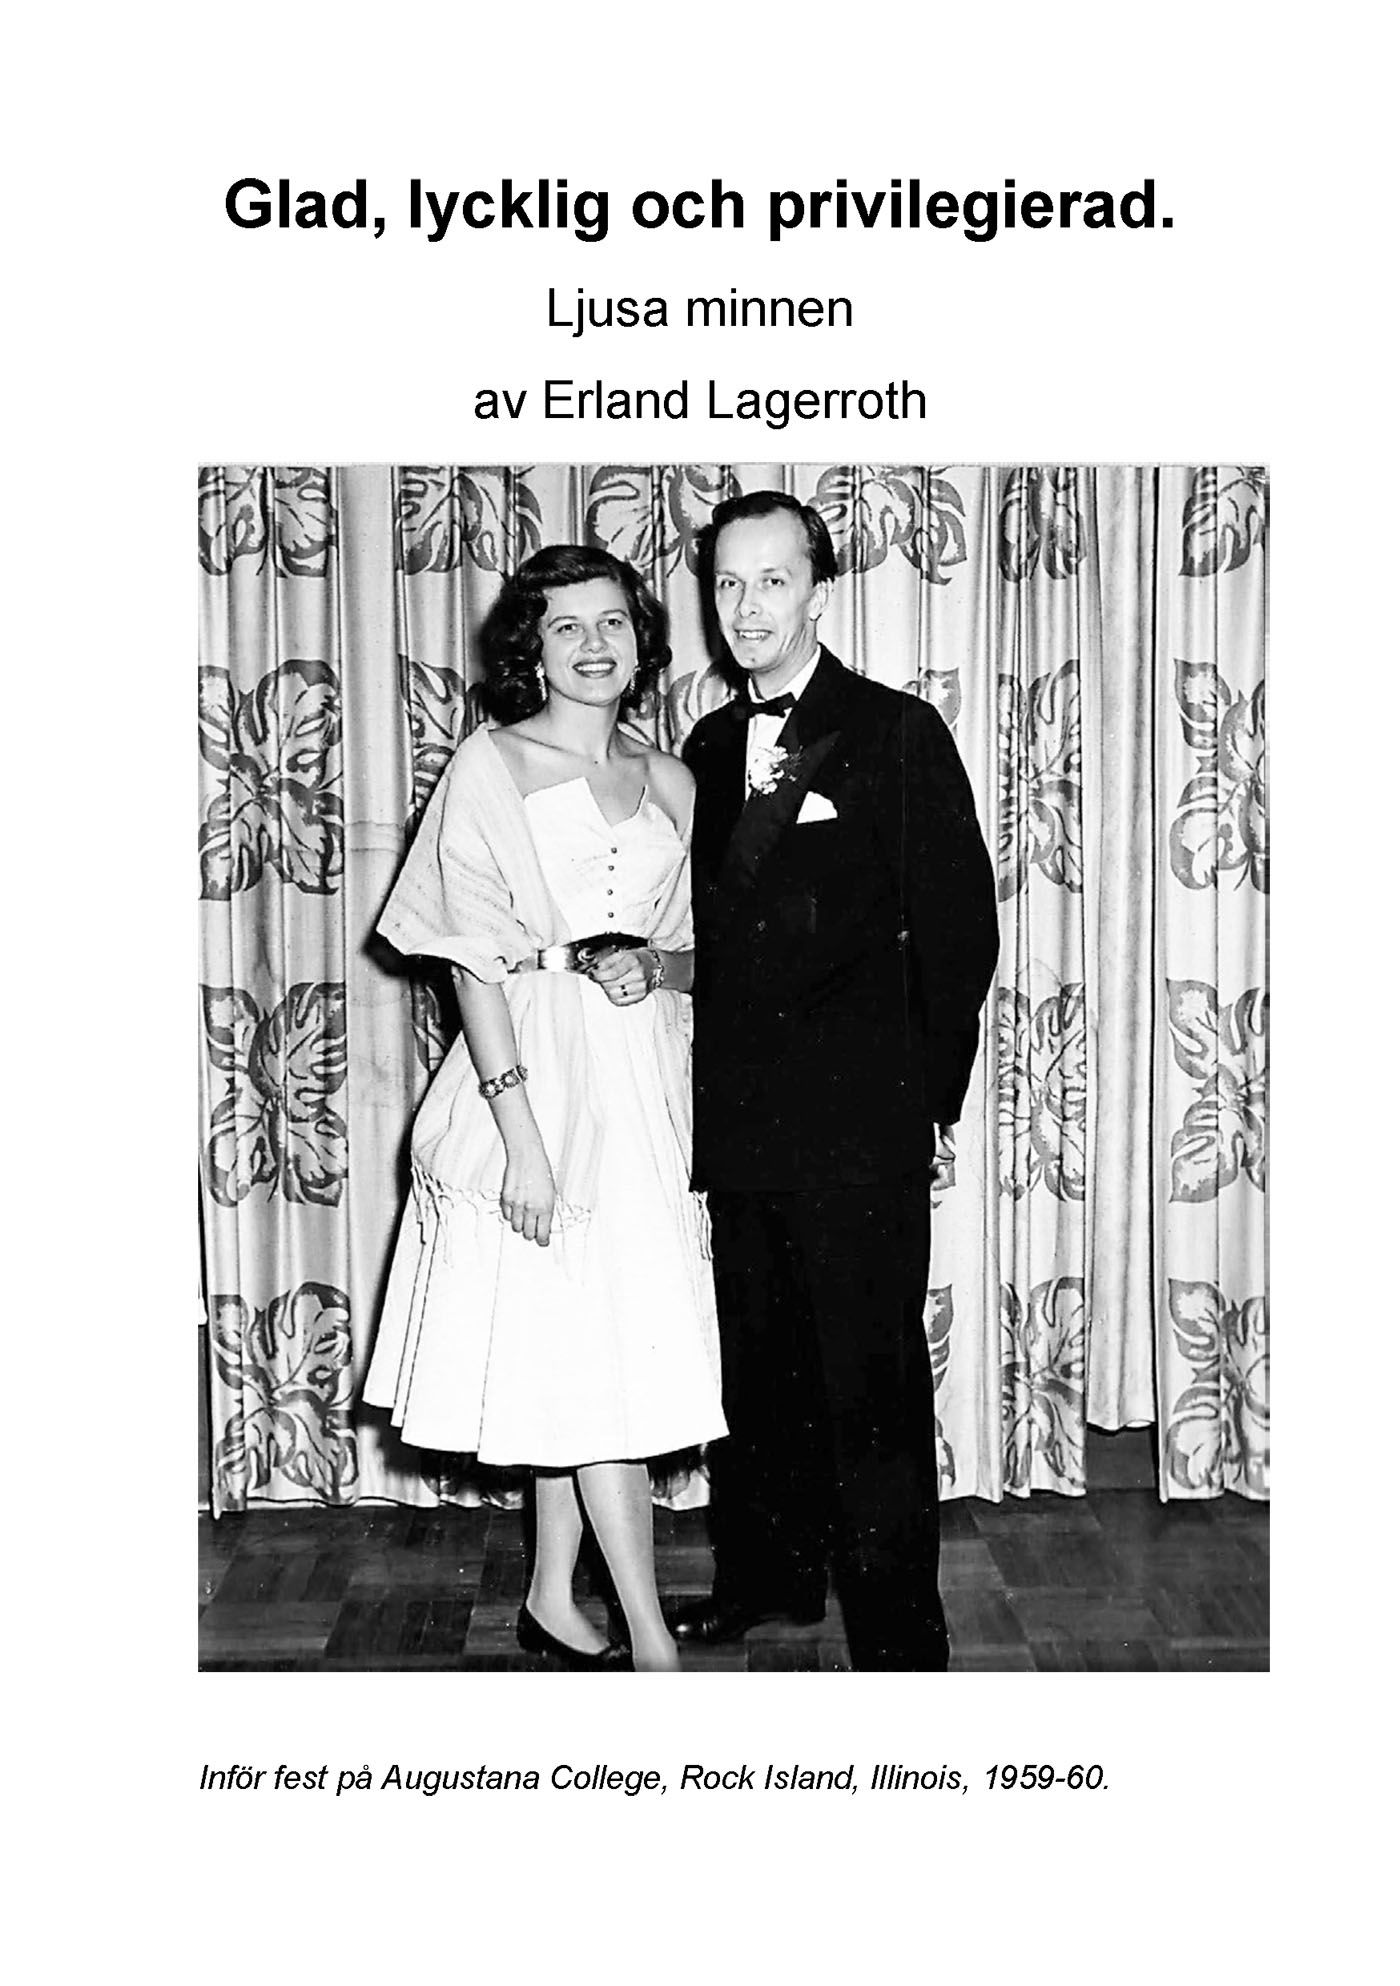 Glad, lycklig och privilegierad - Ljusa minnen, eBook by Erland Lagerroth